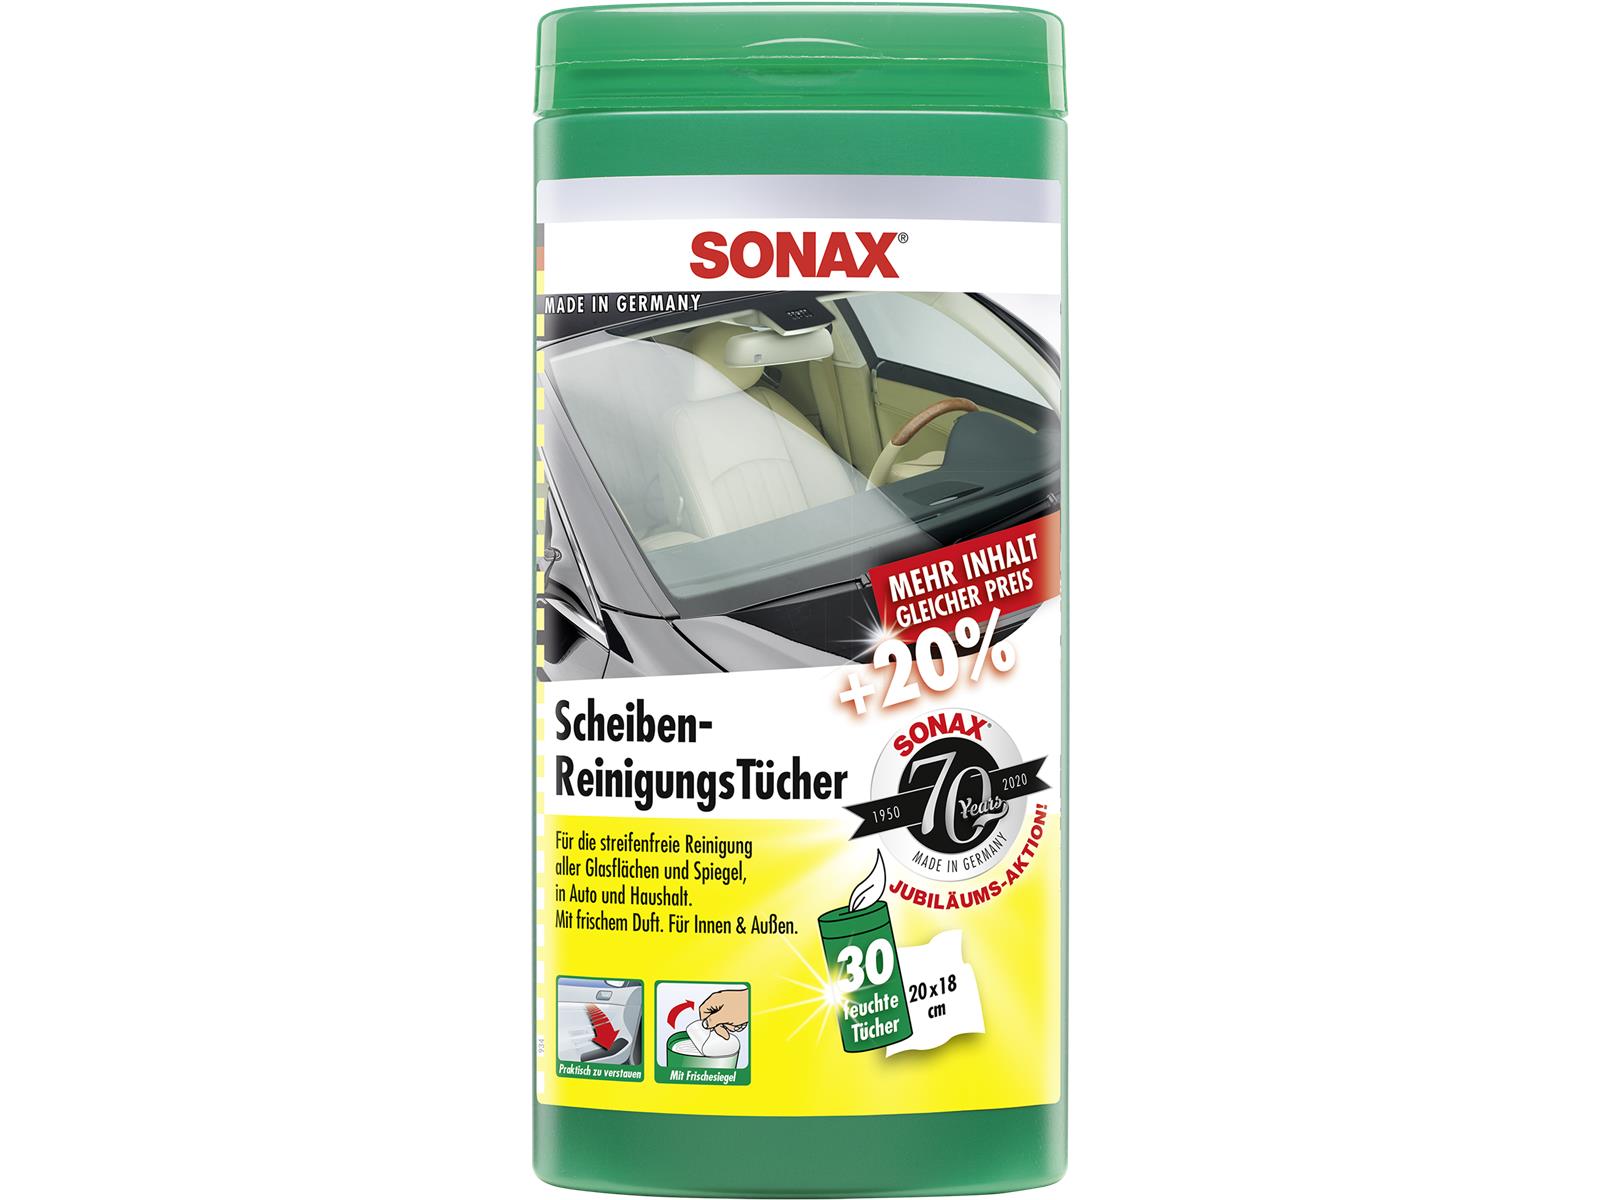 SONAX 04120000 ScheibenReinigungsTücher Box Jubiläumsaktion +20% 30 Stück